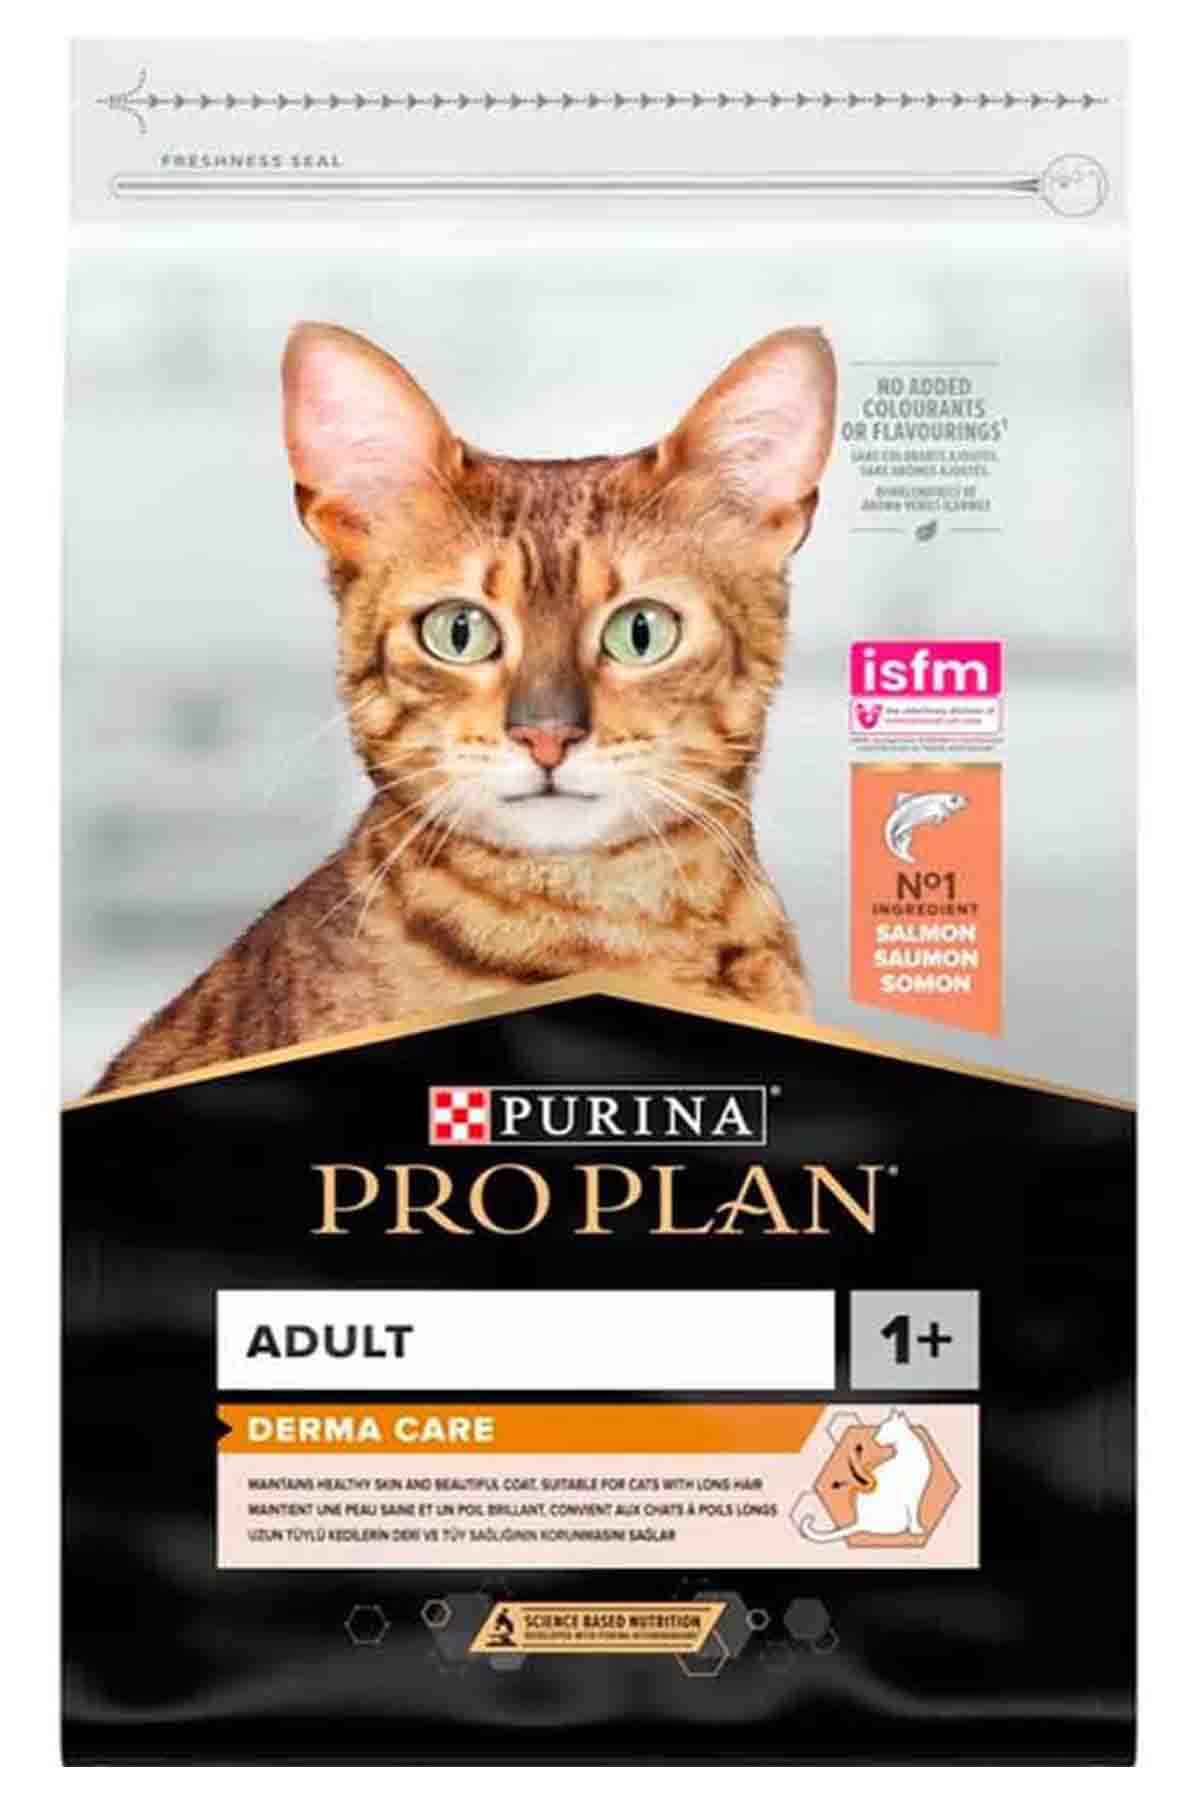 Pro Plan Elegant Somonlu Yetişkin Kedi Maması 10kg